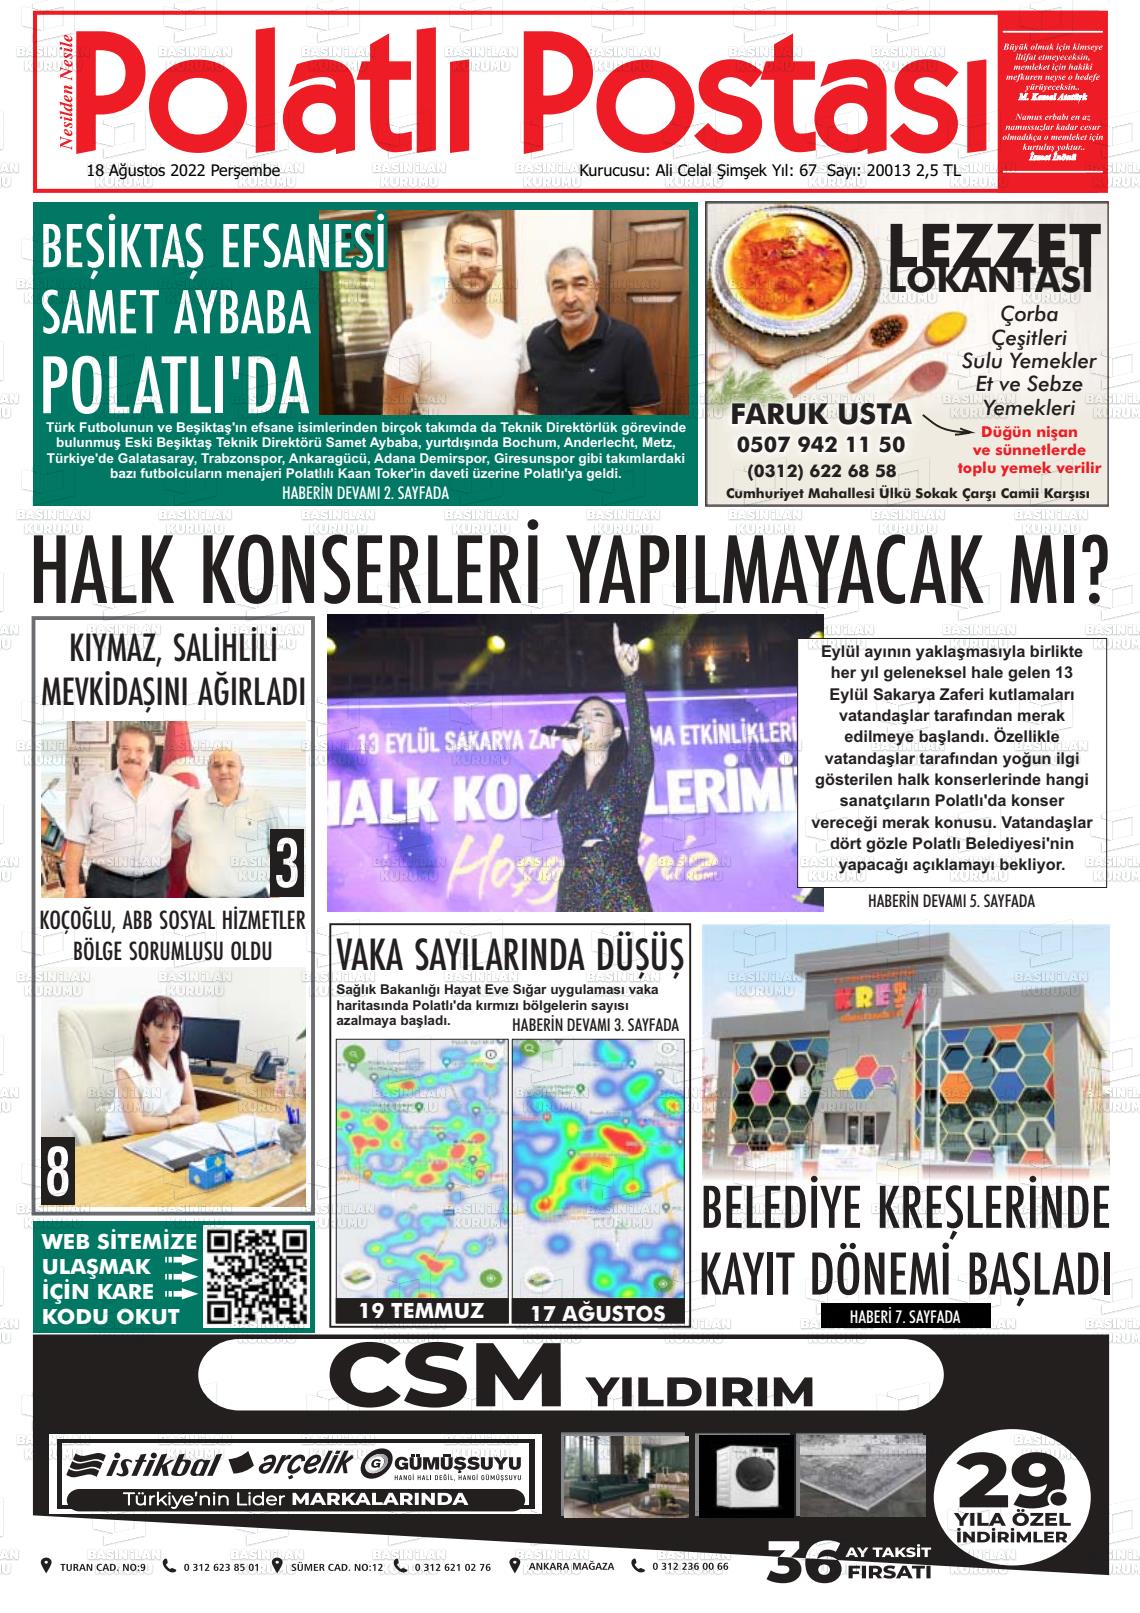 18 Ağustos 2022 Polatlı Postası Gazete Manşeti